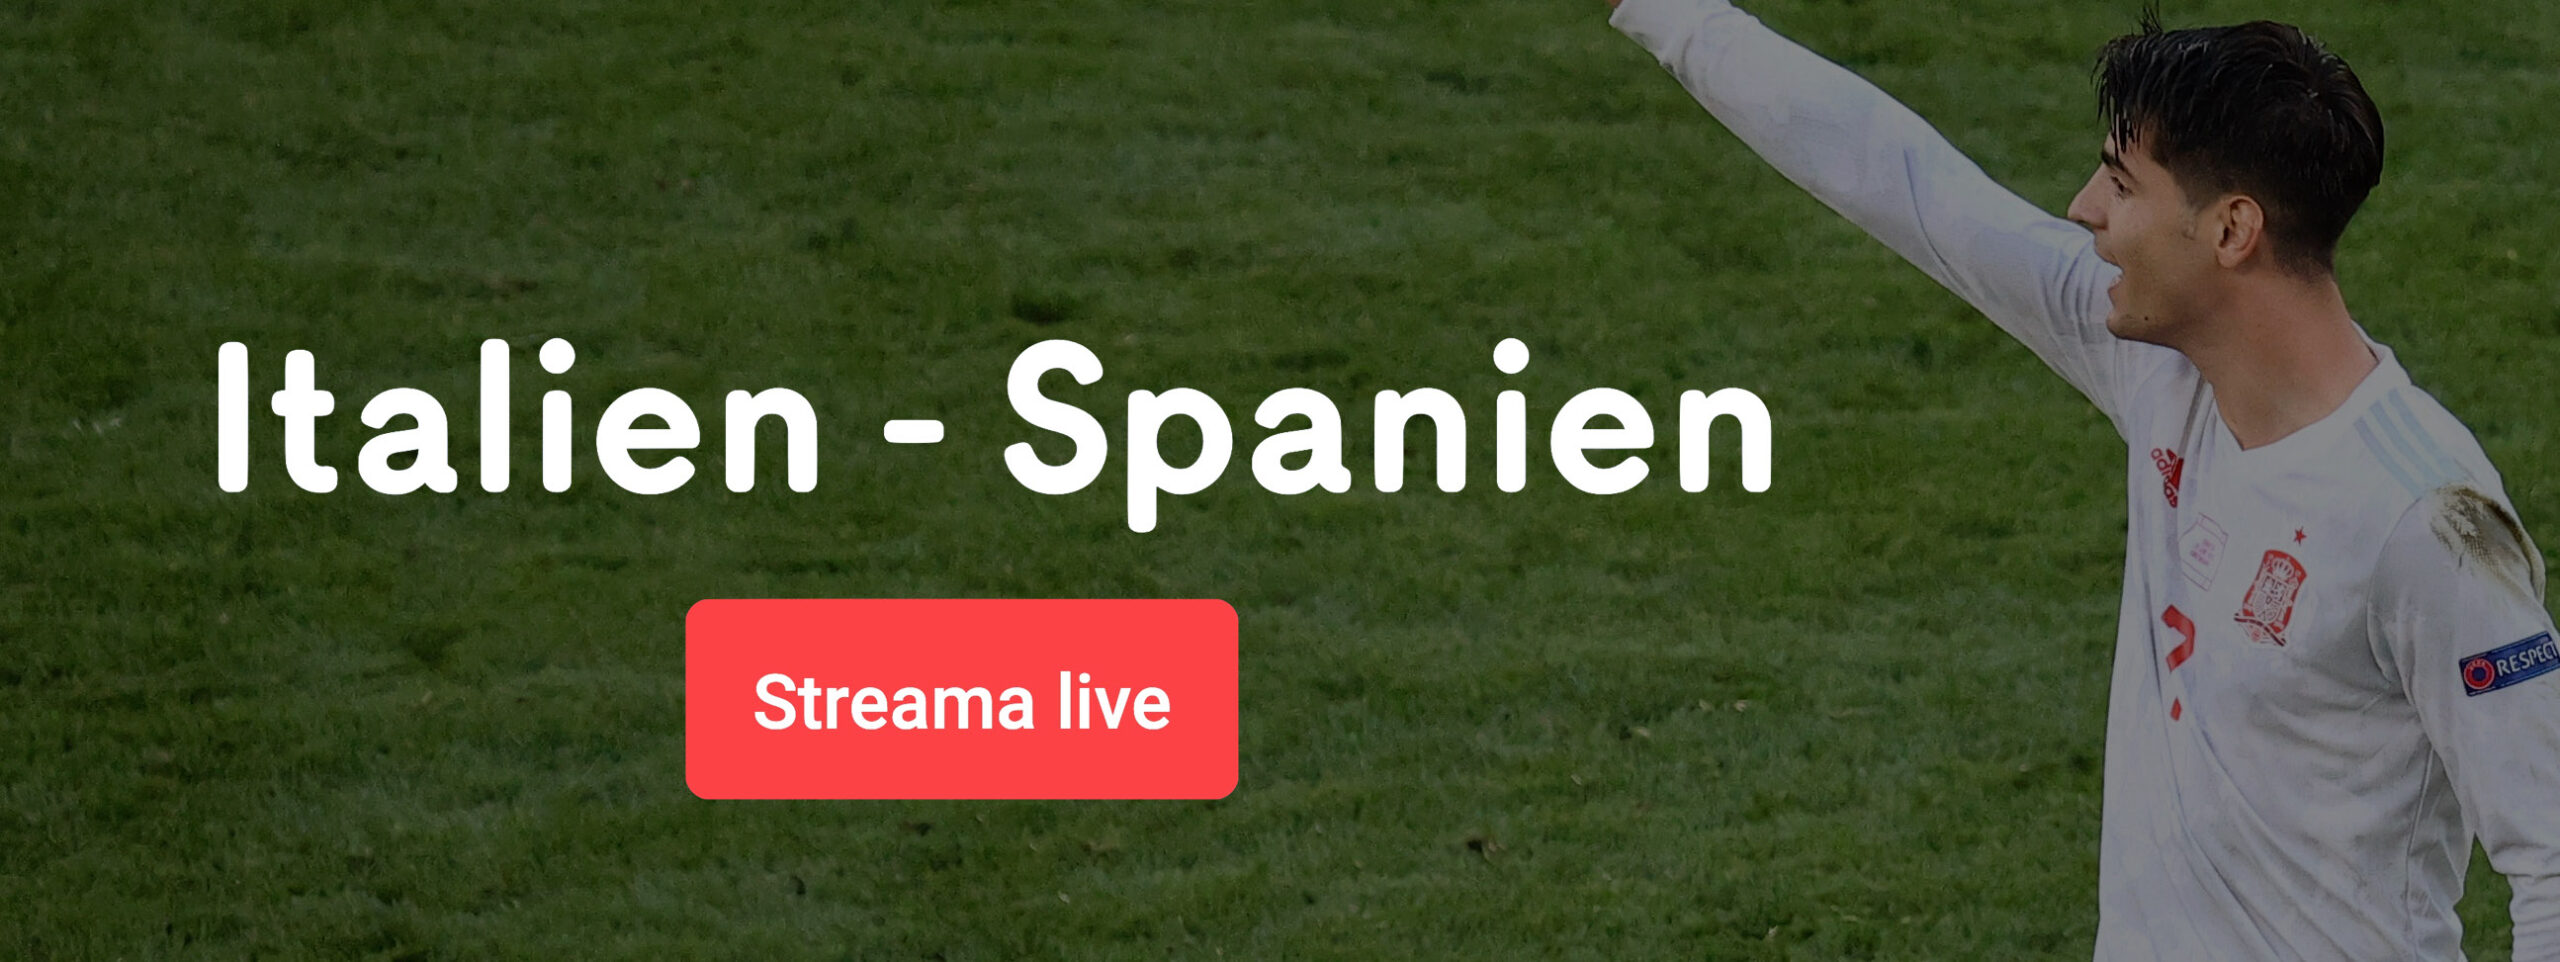 Streama Italien Spanien live online – allt om Italien vs Spanien live stream free!